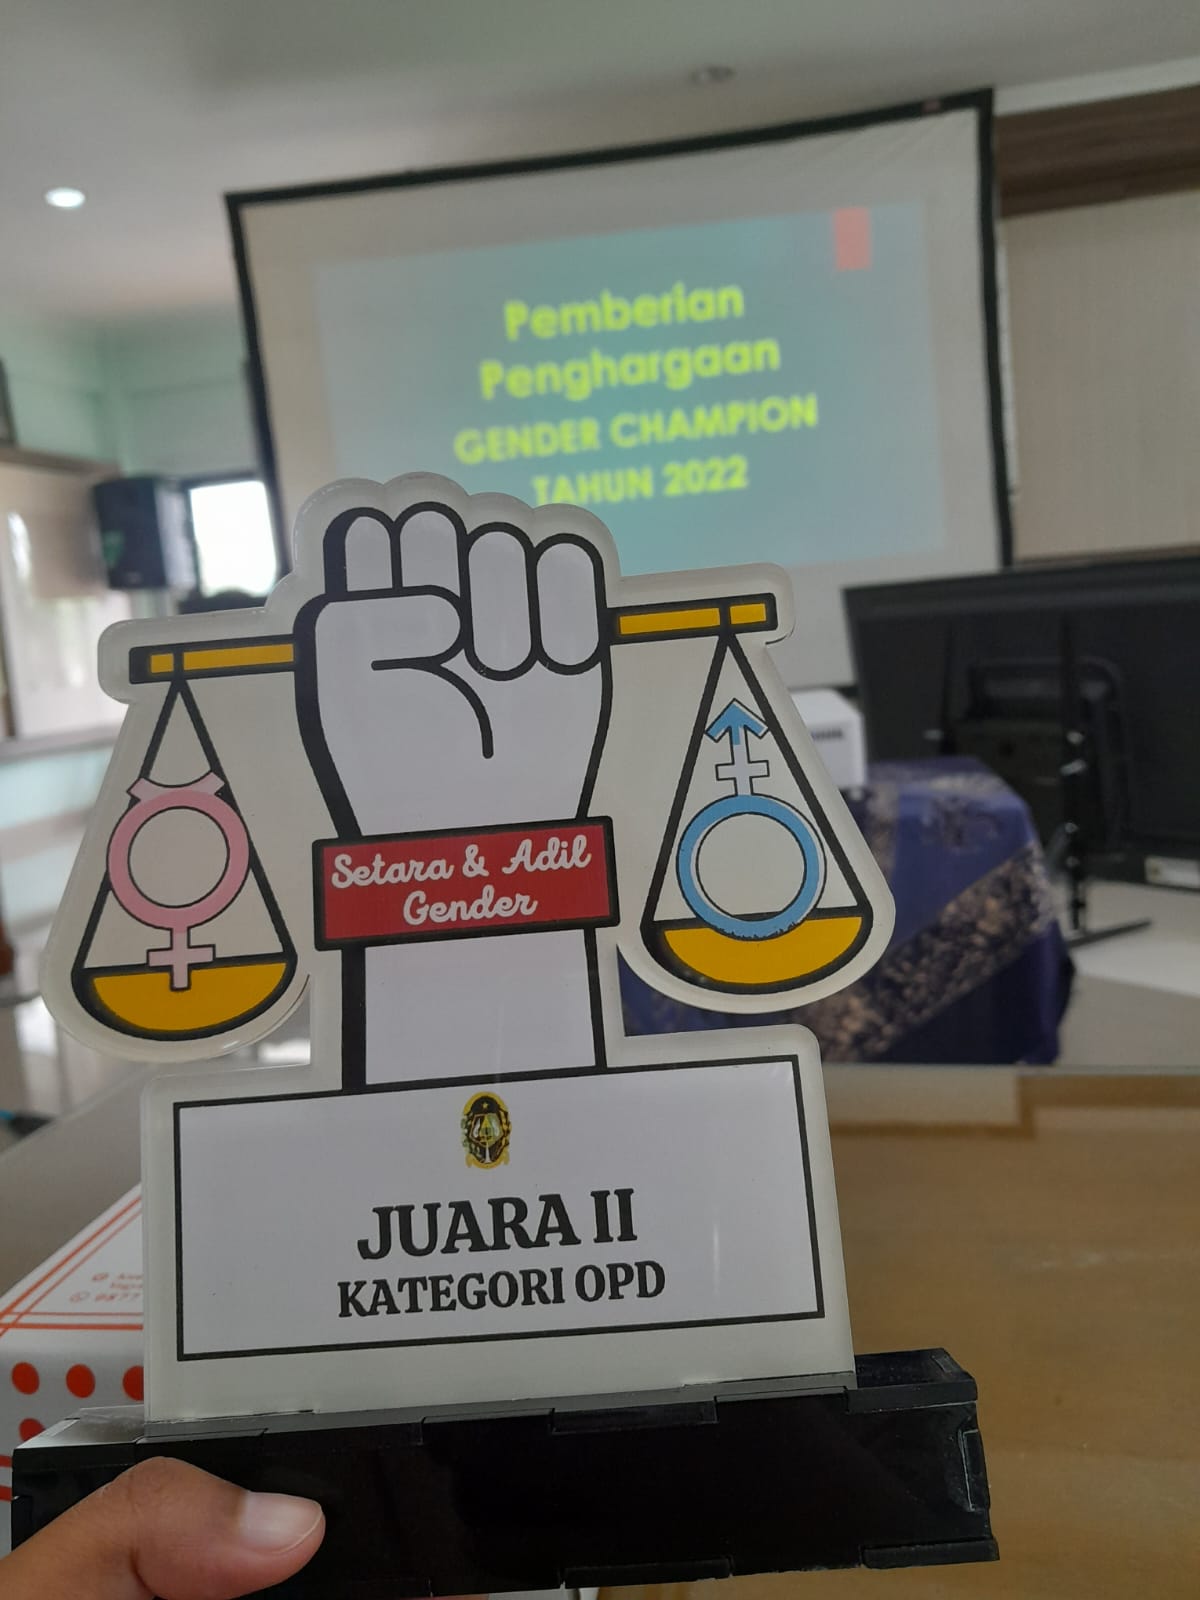 DPUPKP Meraih penghargaan sebagai Juara II Kategori OPD Gender Champion Tahun 2022